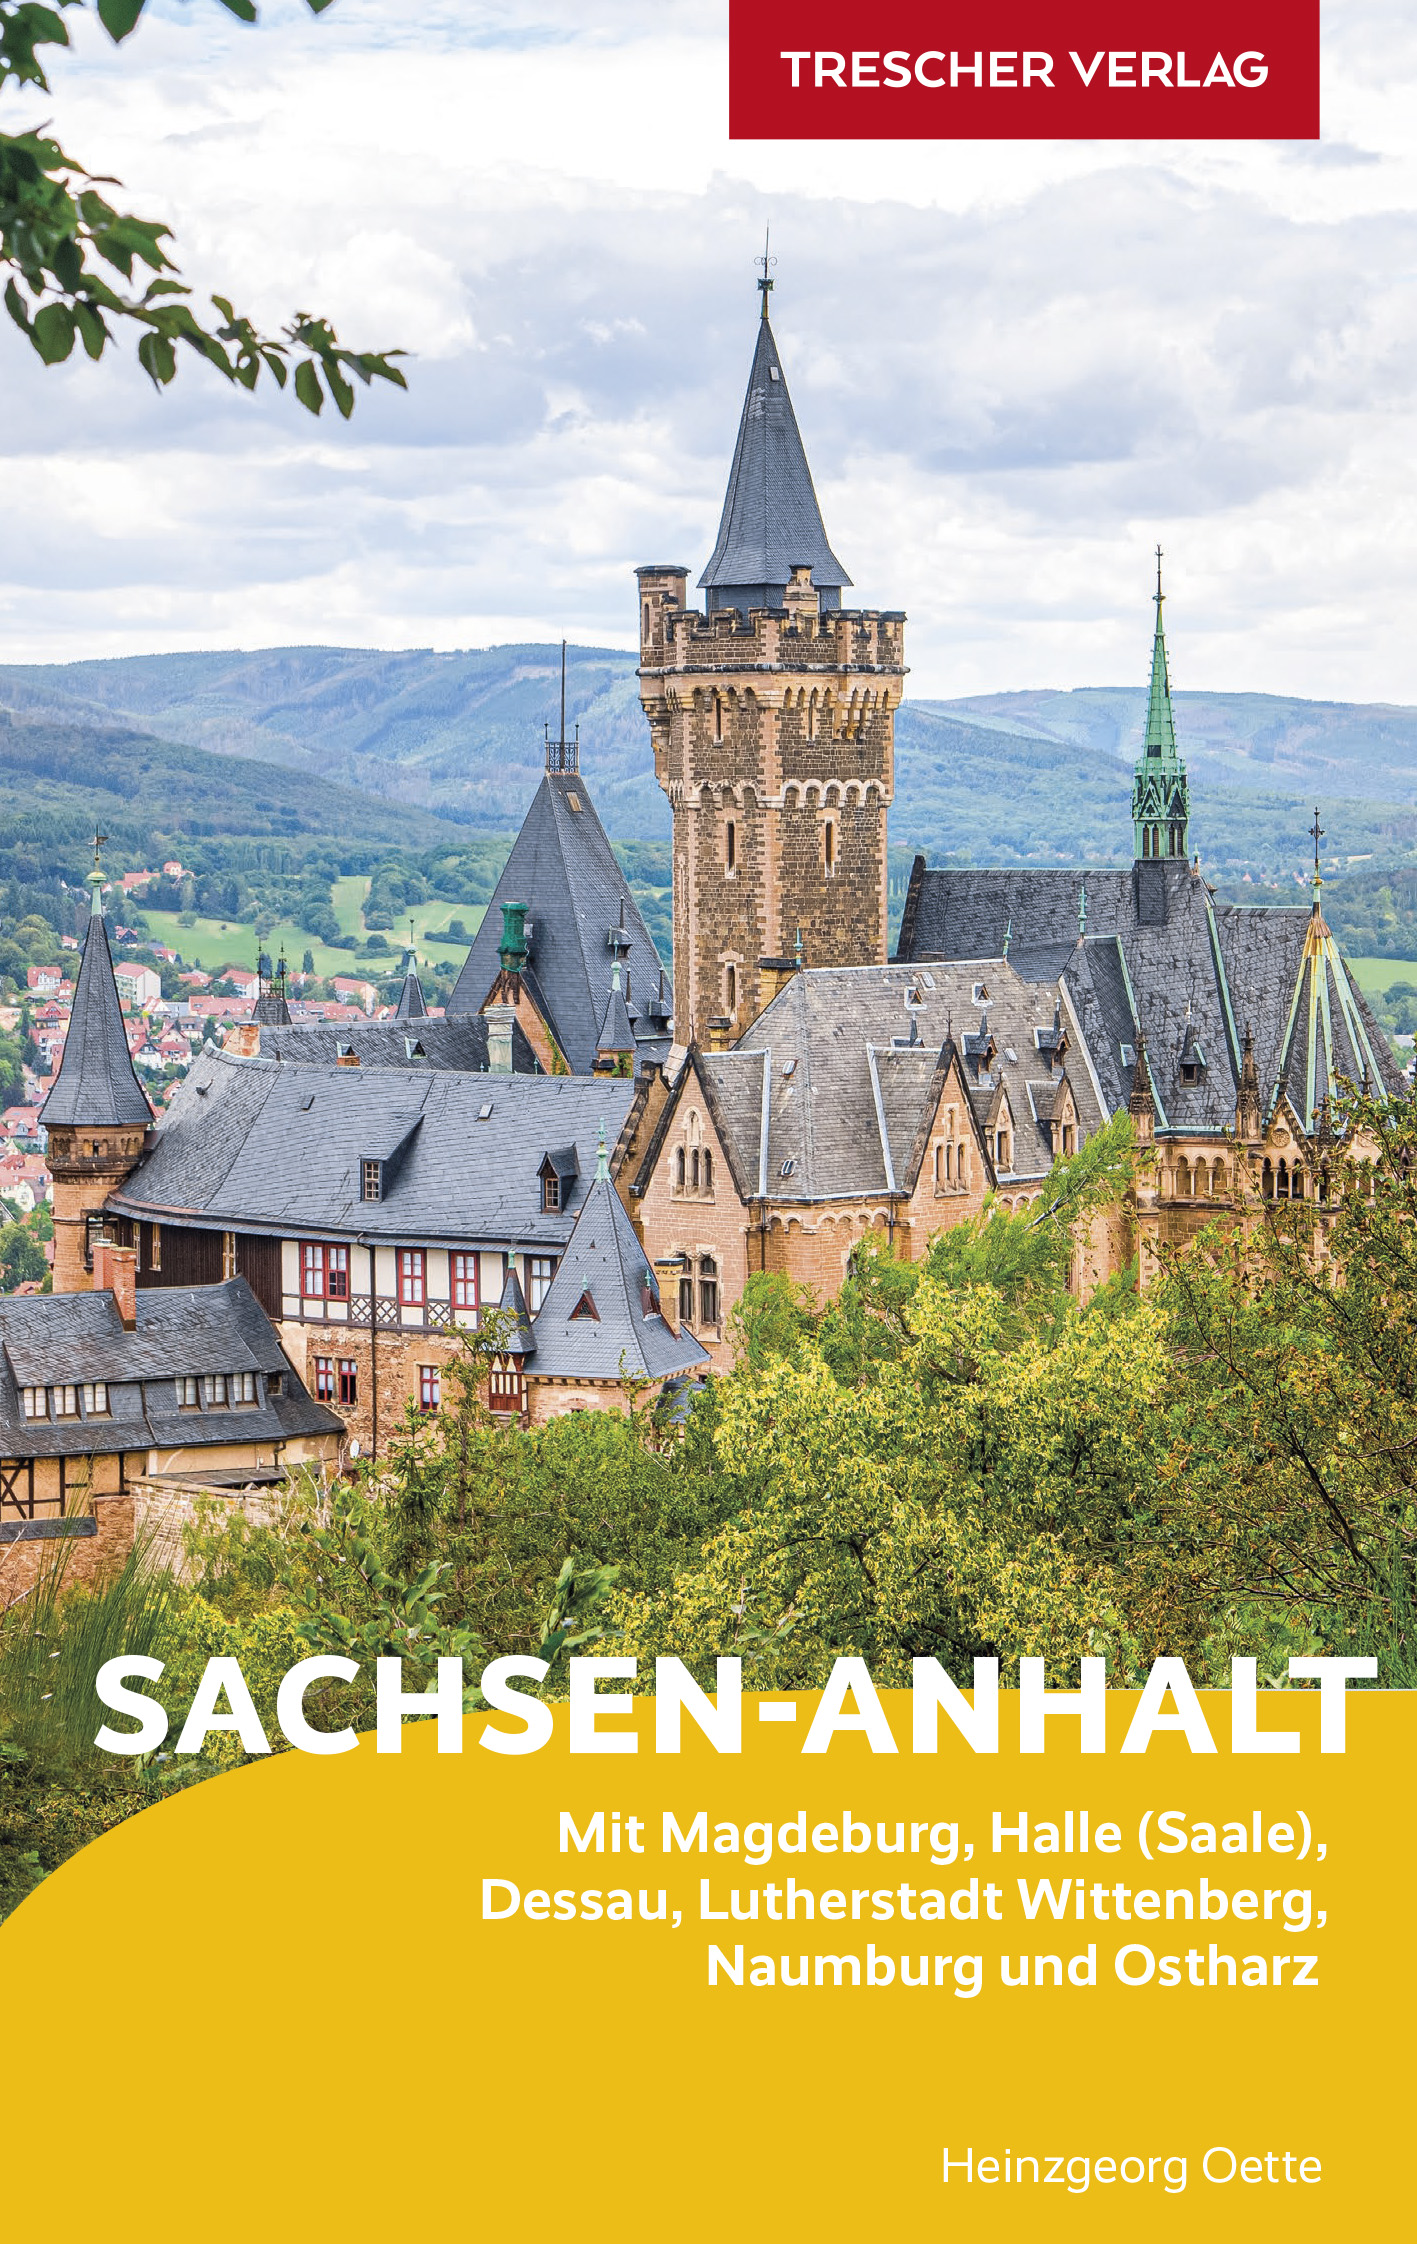 Online bestellen: Reisgids Sachsen-Anhalt | Trescher Verlag